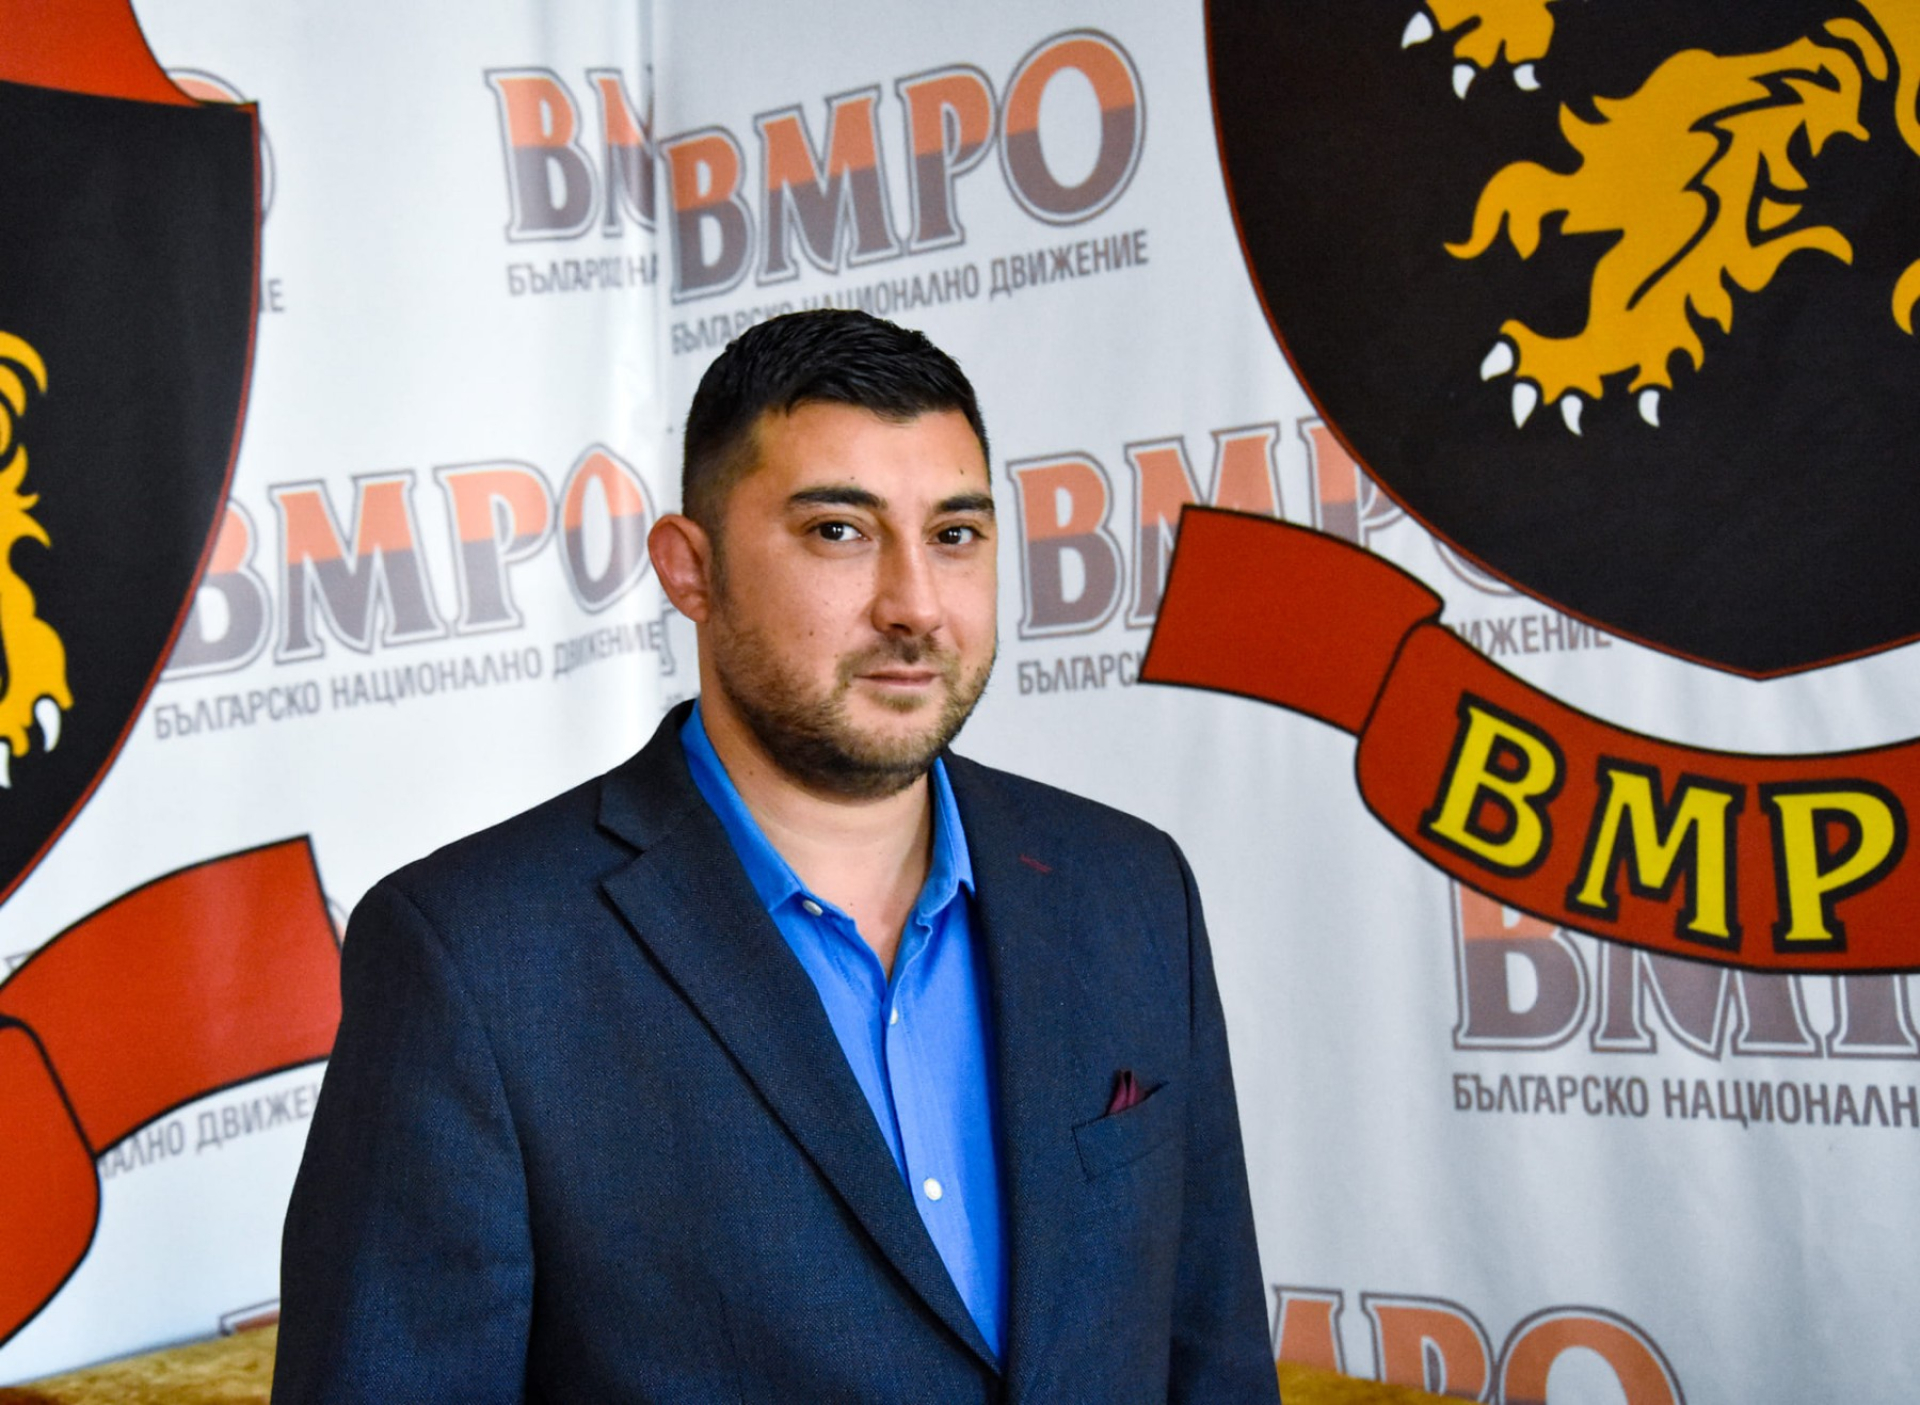 Контрера, ВМРО: Асен Василев не трябва да бъде министър никога повече!